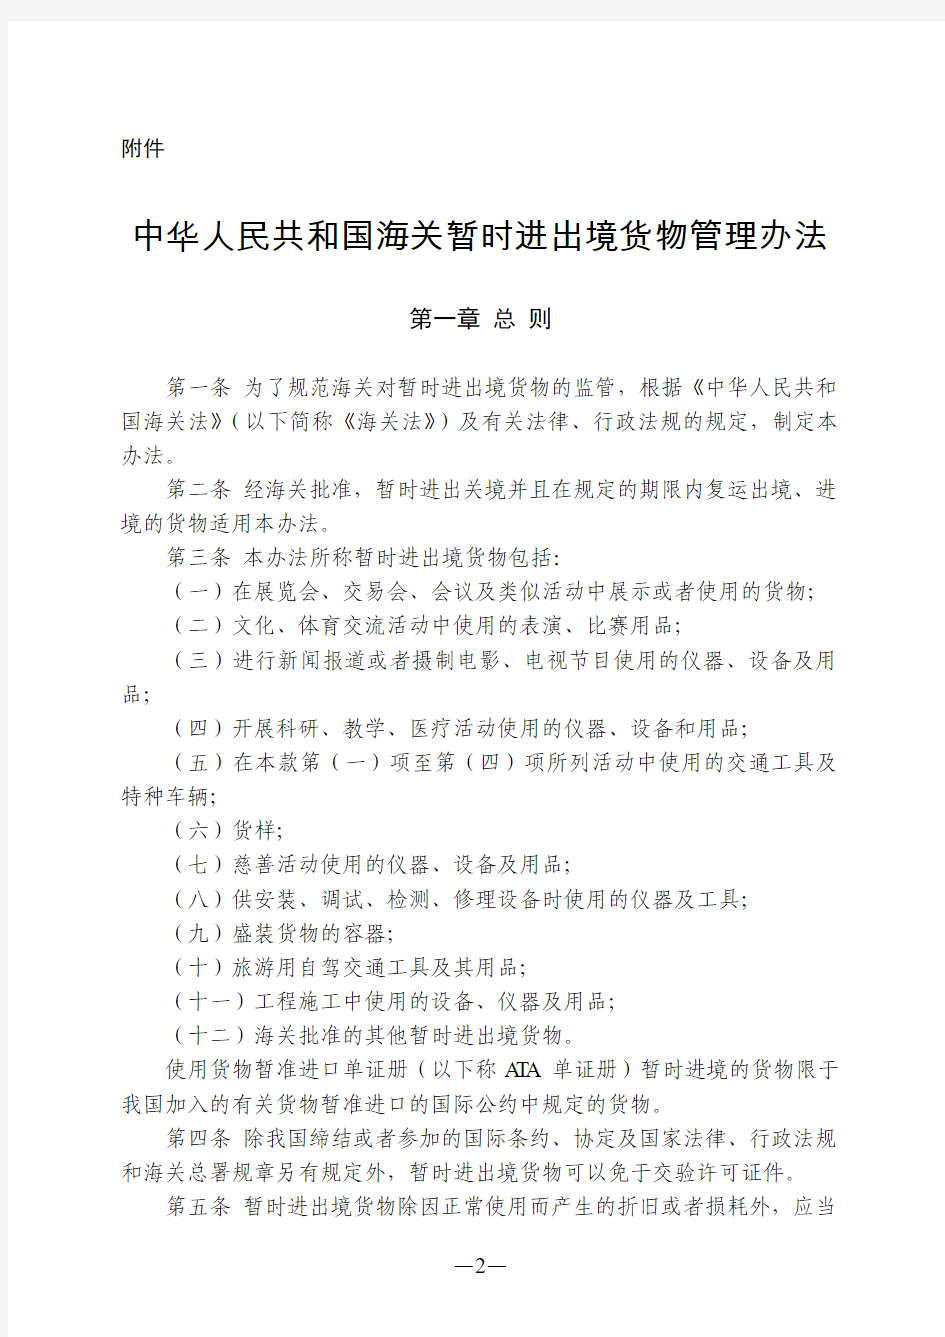 中华人民共和国海关暂时进出境货物管理办法(2013年修改)